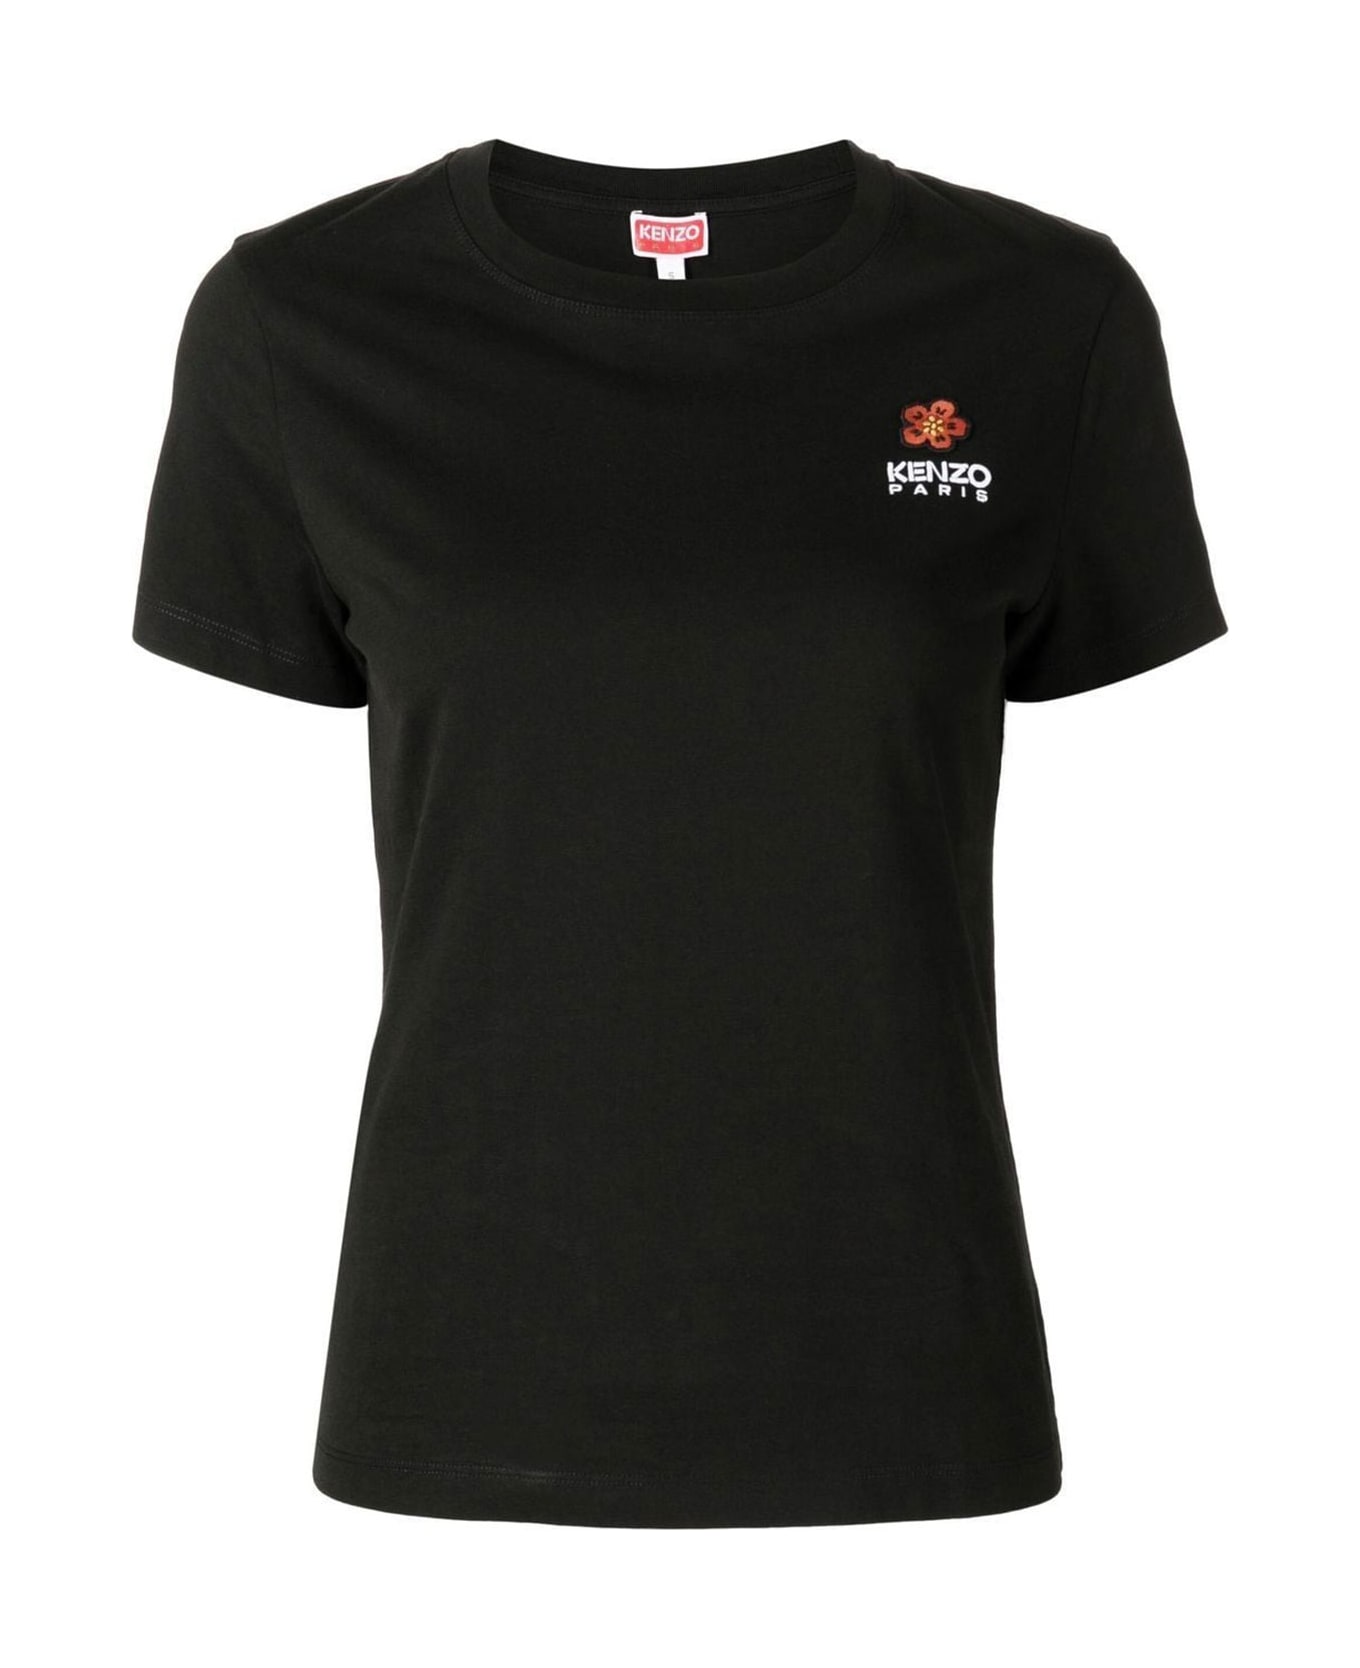 Kenzo Boke Flower Crest Logo T-shirt - BLACK Tシャツ